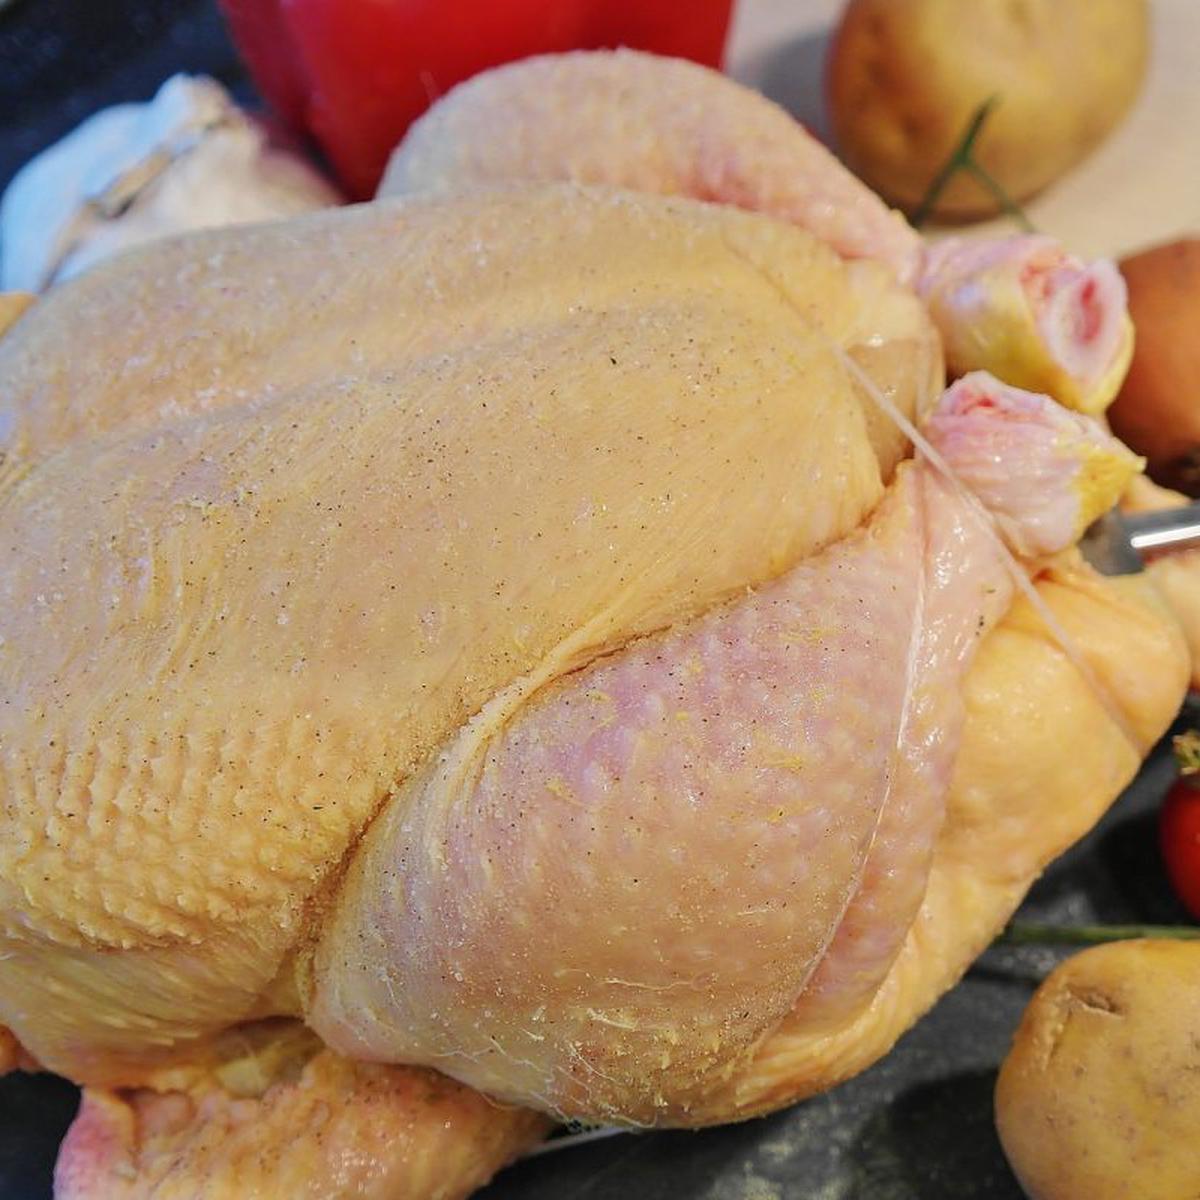 Fotos | Trucos para reconocer si el pollo está malogrado antes de cocinarlo  | Recetas | Alimentos | México | Estados Unidos | EEUU | USA | nnda | nnni  | RECETAS | MAG.